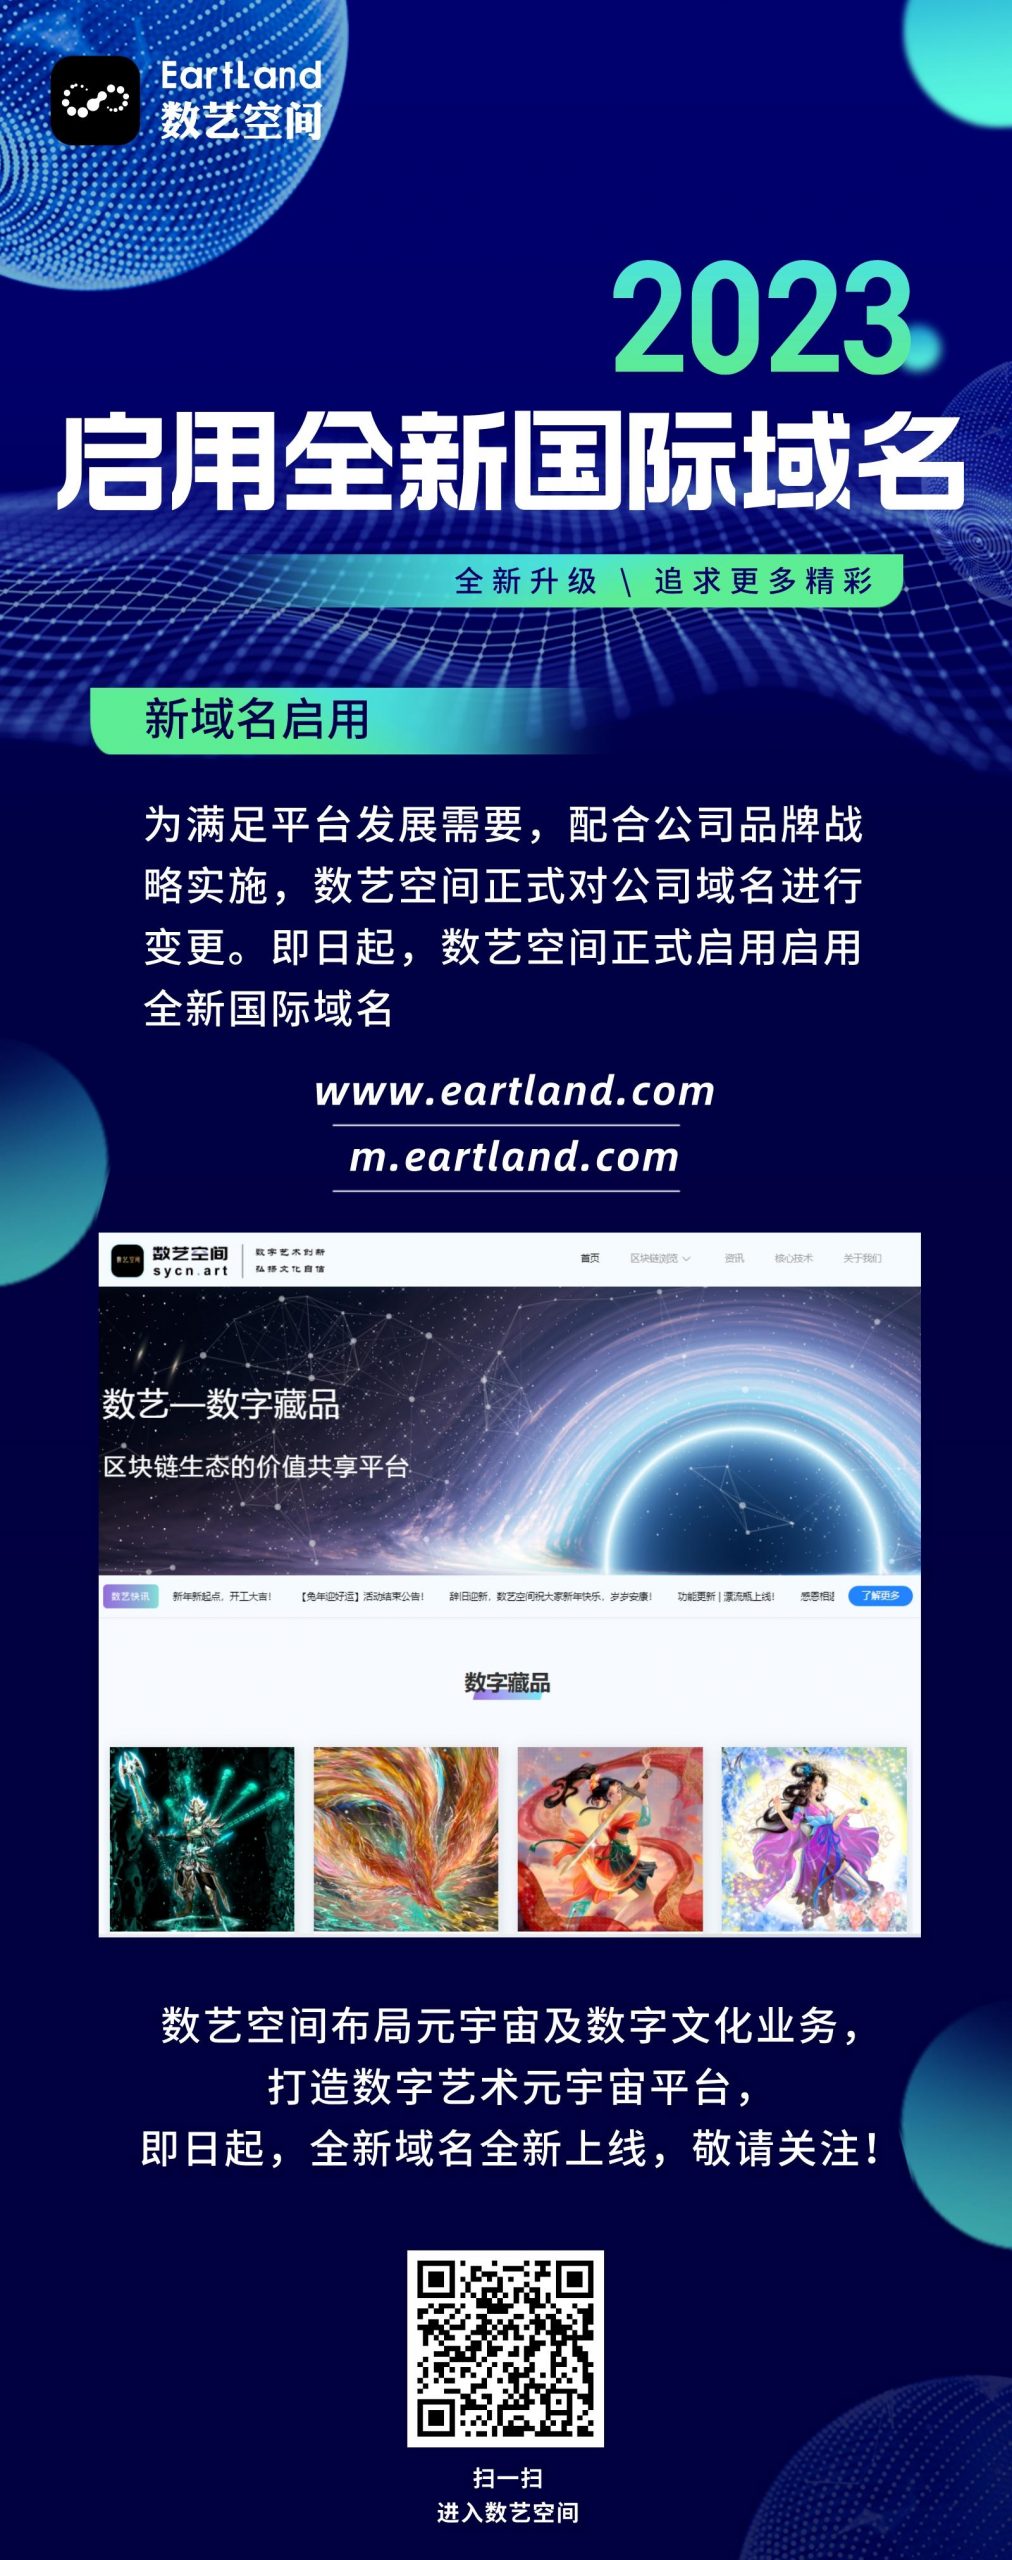 国内知名NFT元宇宙开放平台“数艺空间”品牌全新升级，EartLand.com国际域名正式启用通知！